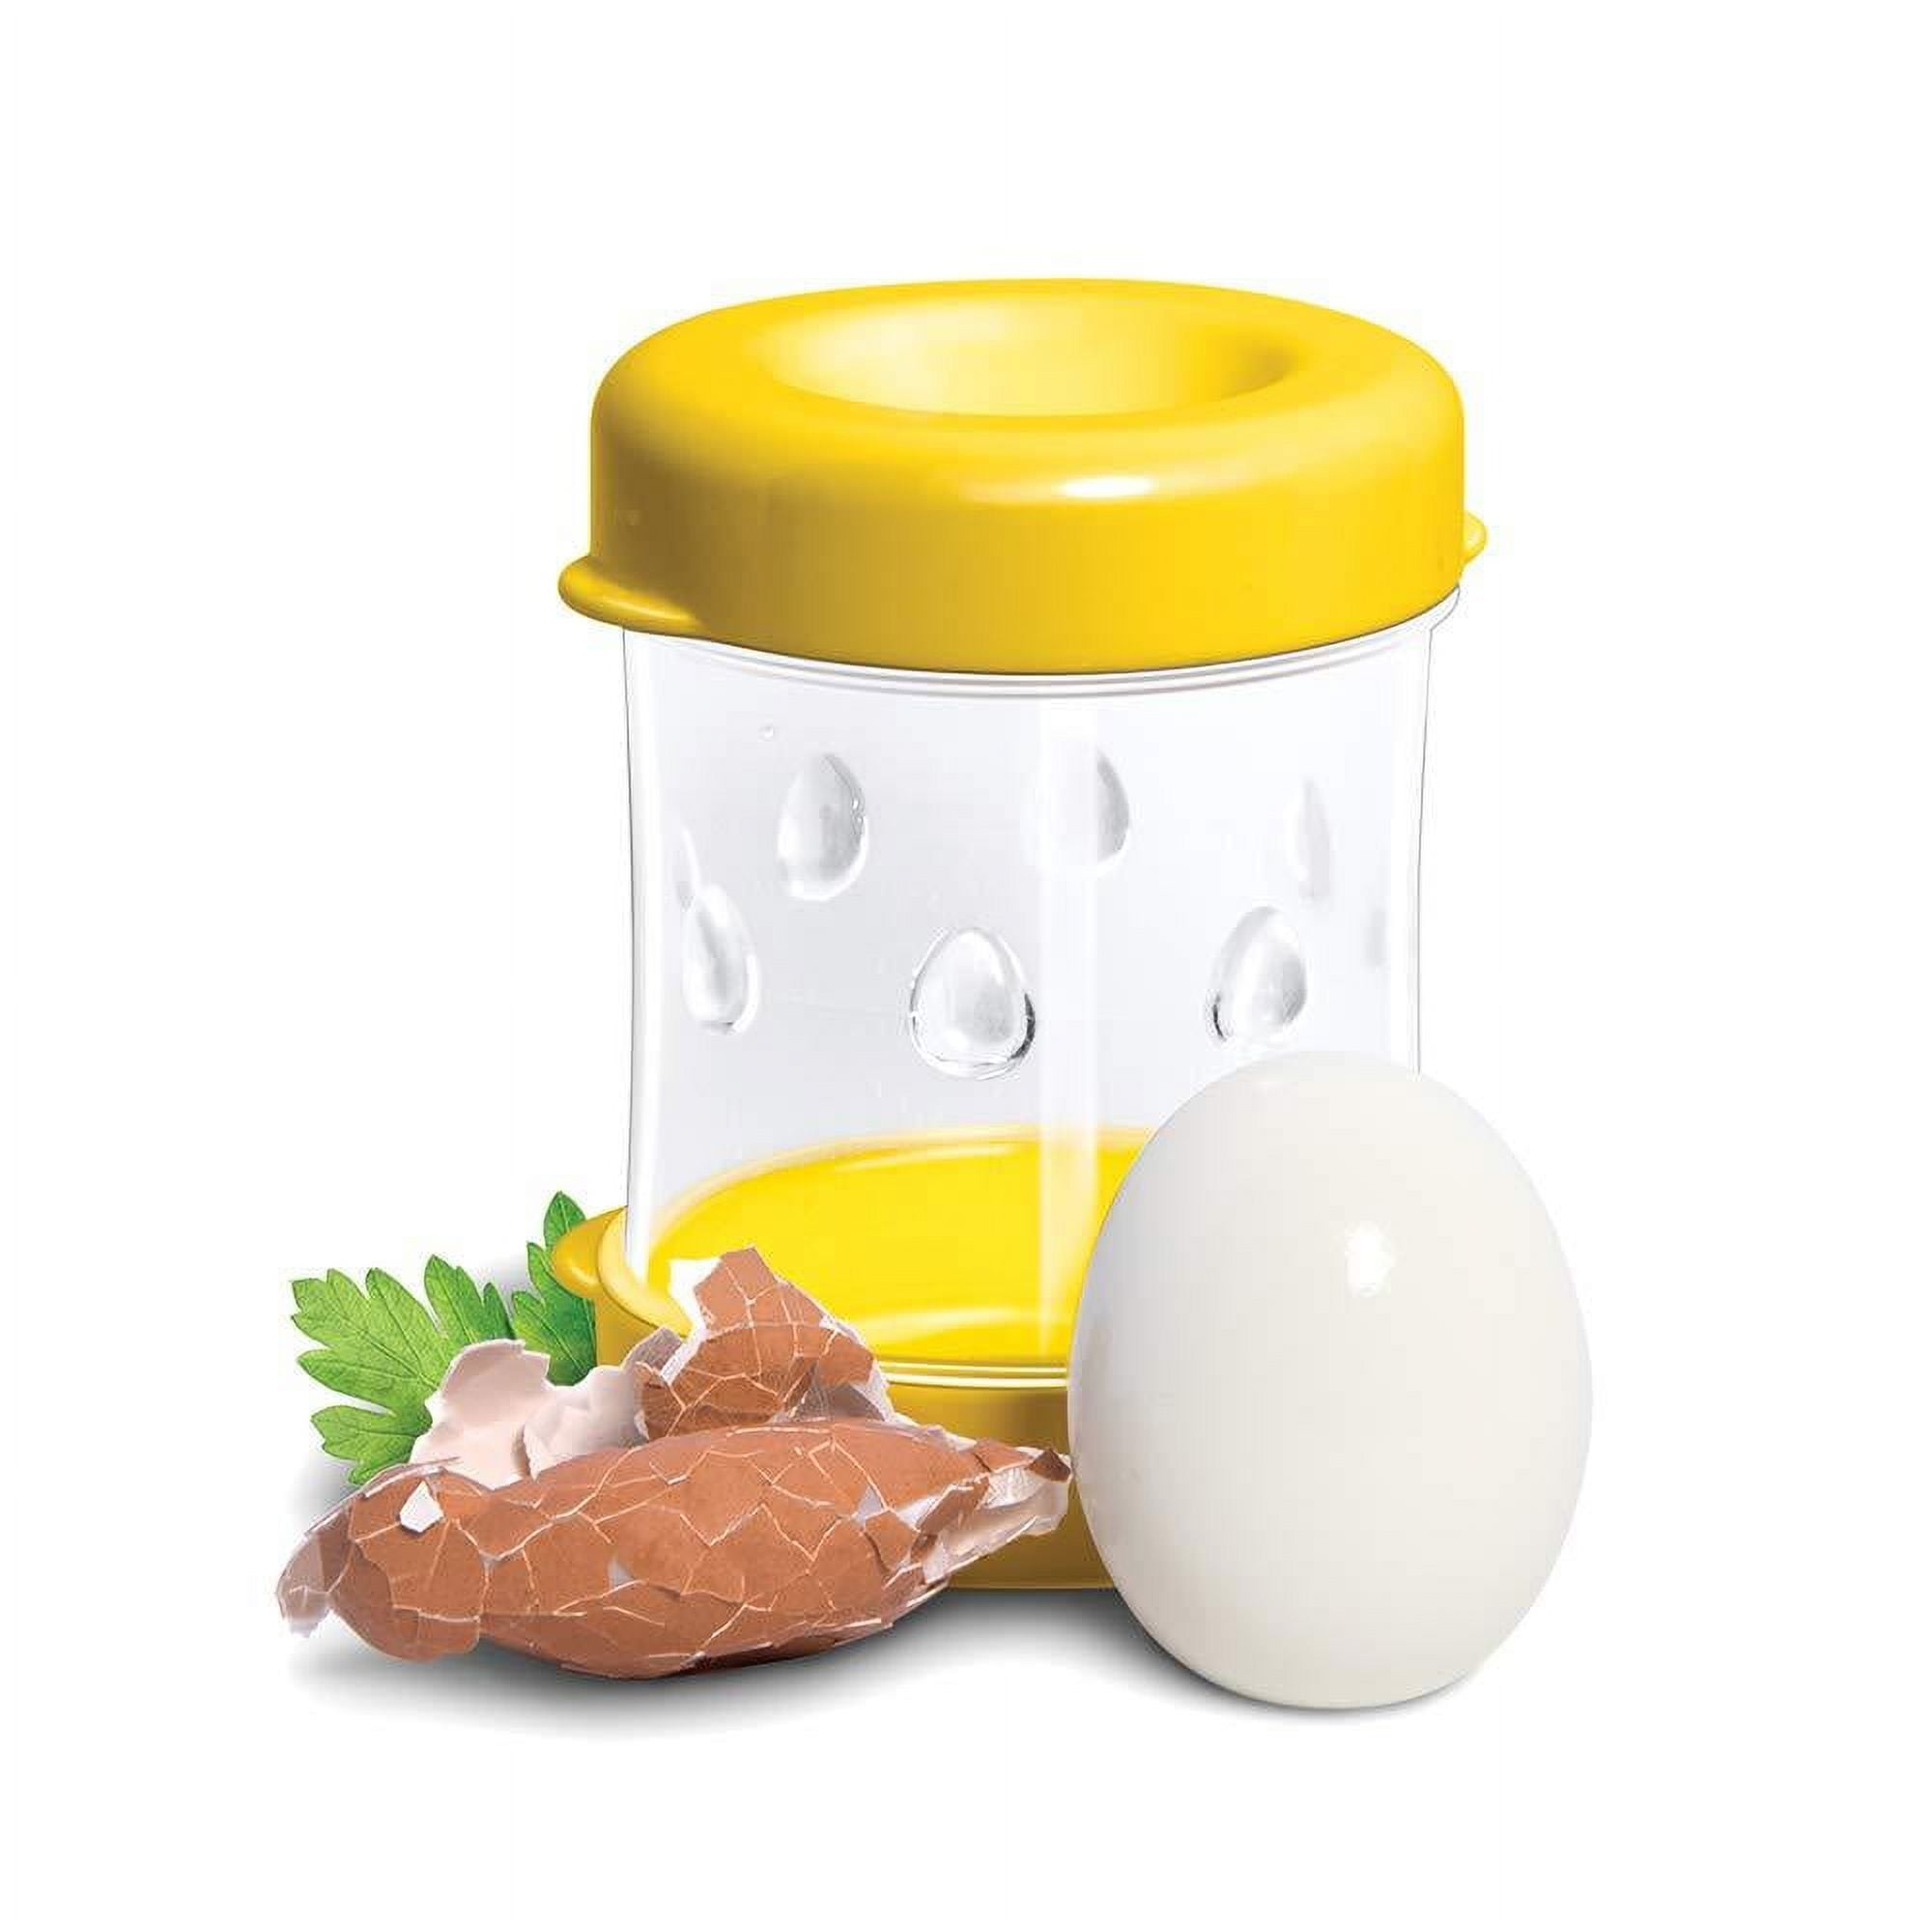 The Negg Hard-Boiled Egg Peeler | Creative Kitchen Fargo